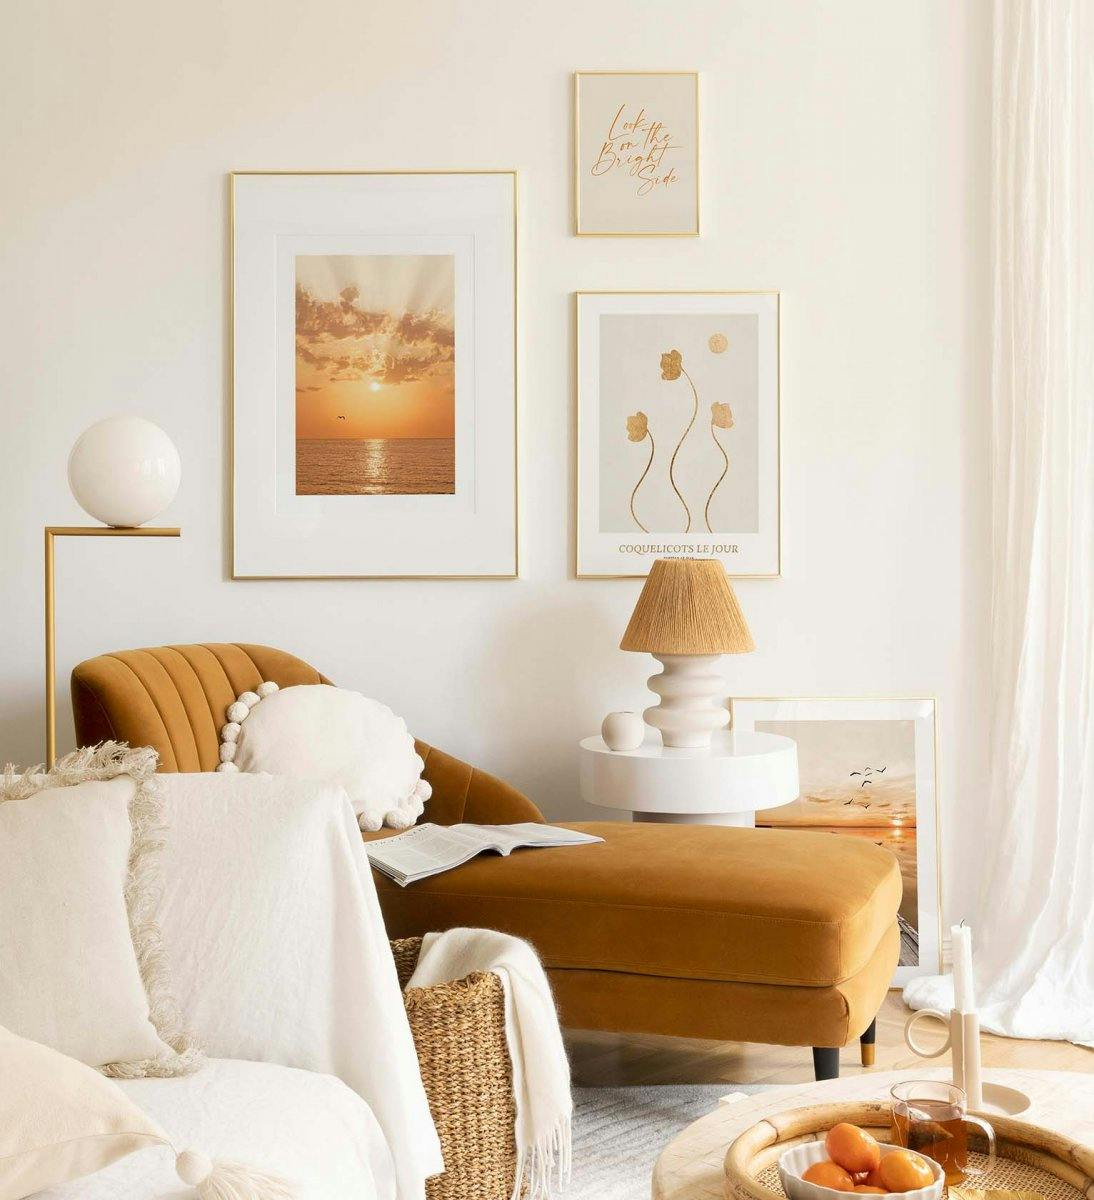 جدار معرض خفيف وهادئ مع إطارات ذهبية لغرفة المعيشة أو غرفة النوم